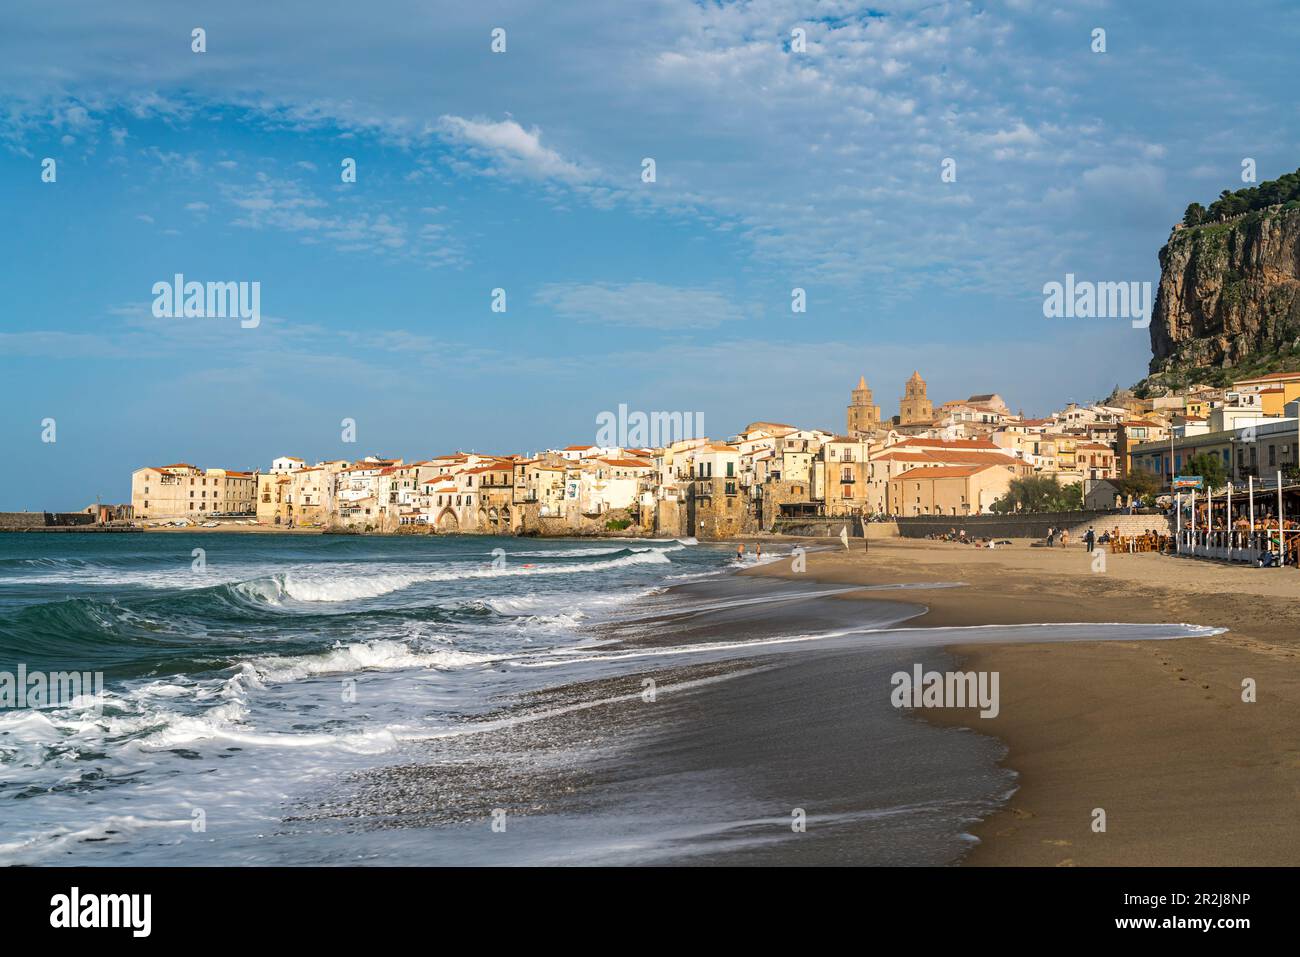 Spiaggia Lungomare Strand und die Altstadt mit der Kathedrale von Cefalu, Sizilien, Italien, Europa Stockfoto